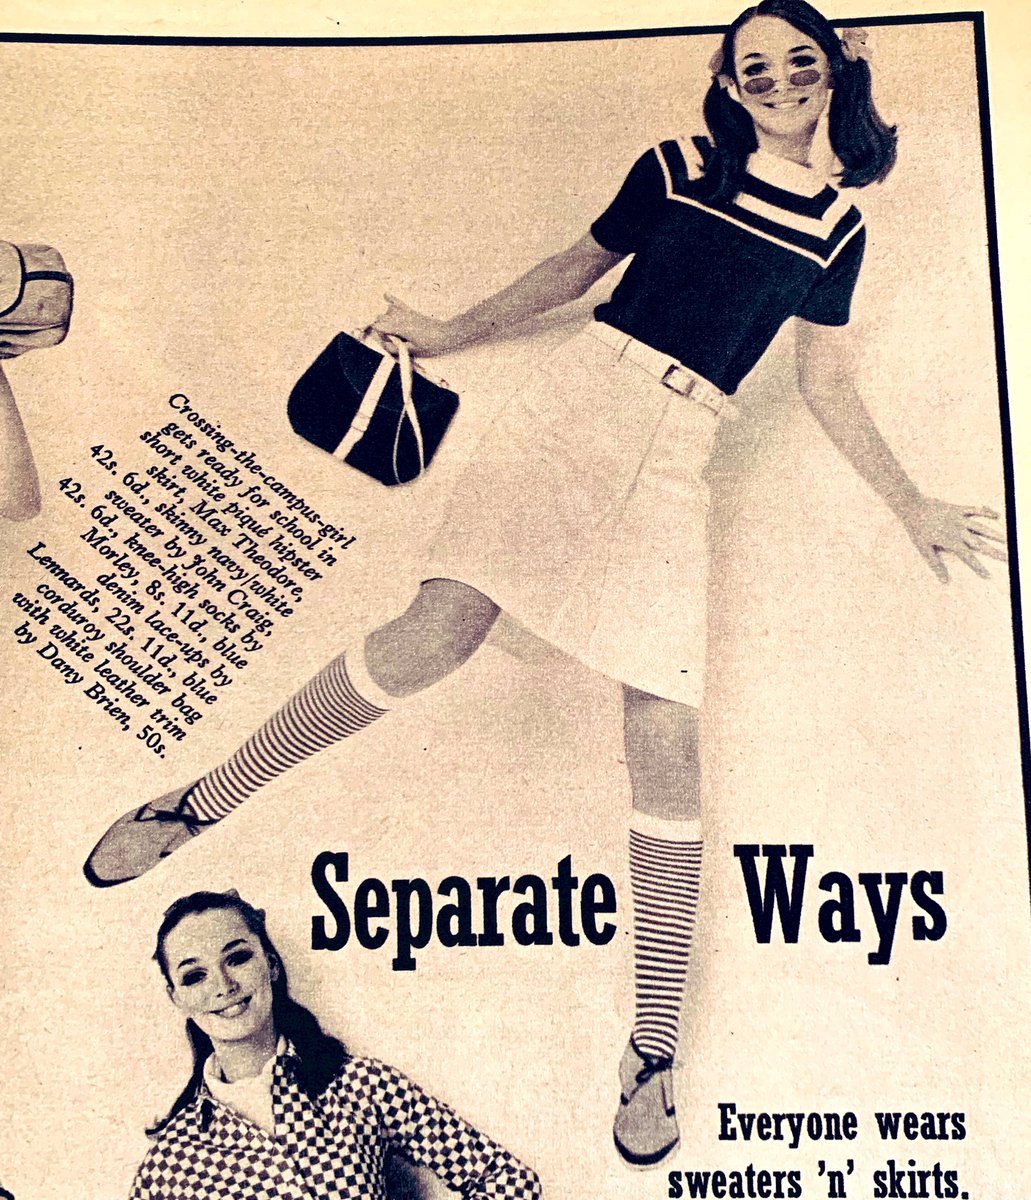 Sixties Fashion Magazine Twitter Da ストッキング 靴下の流行について 1966年のイギリスのファッション 誌から 昨日はアメリカの雑誌でしたが 今日は同年のイギリスの雑誌です 昨日ツイートした通り ニット もしくはレース のストッキング 膝下丈の